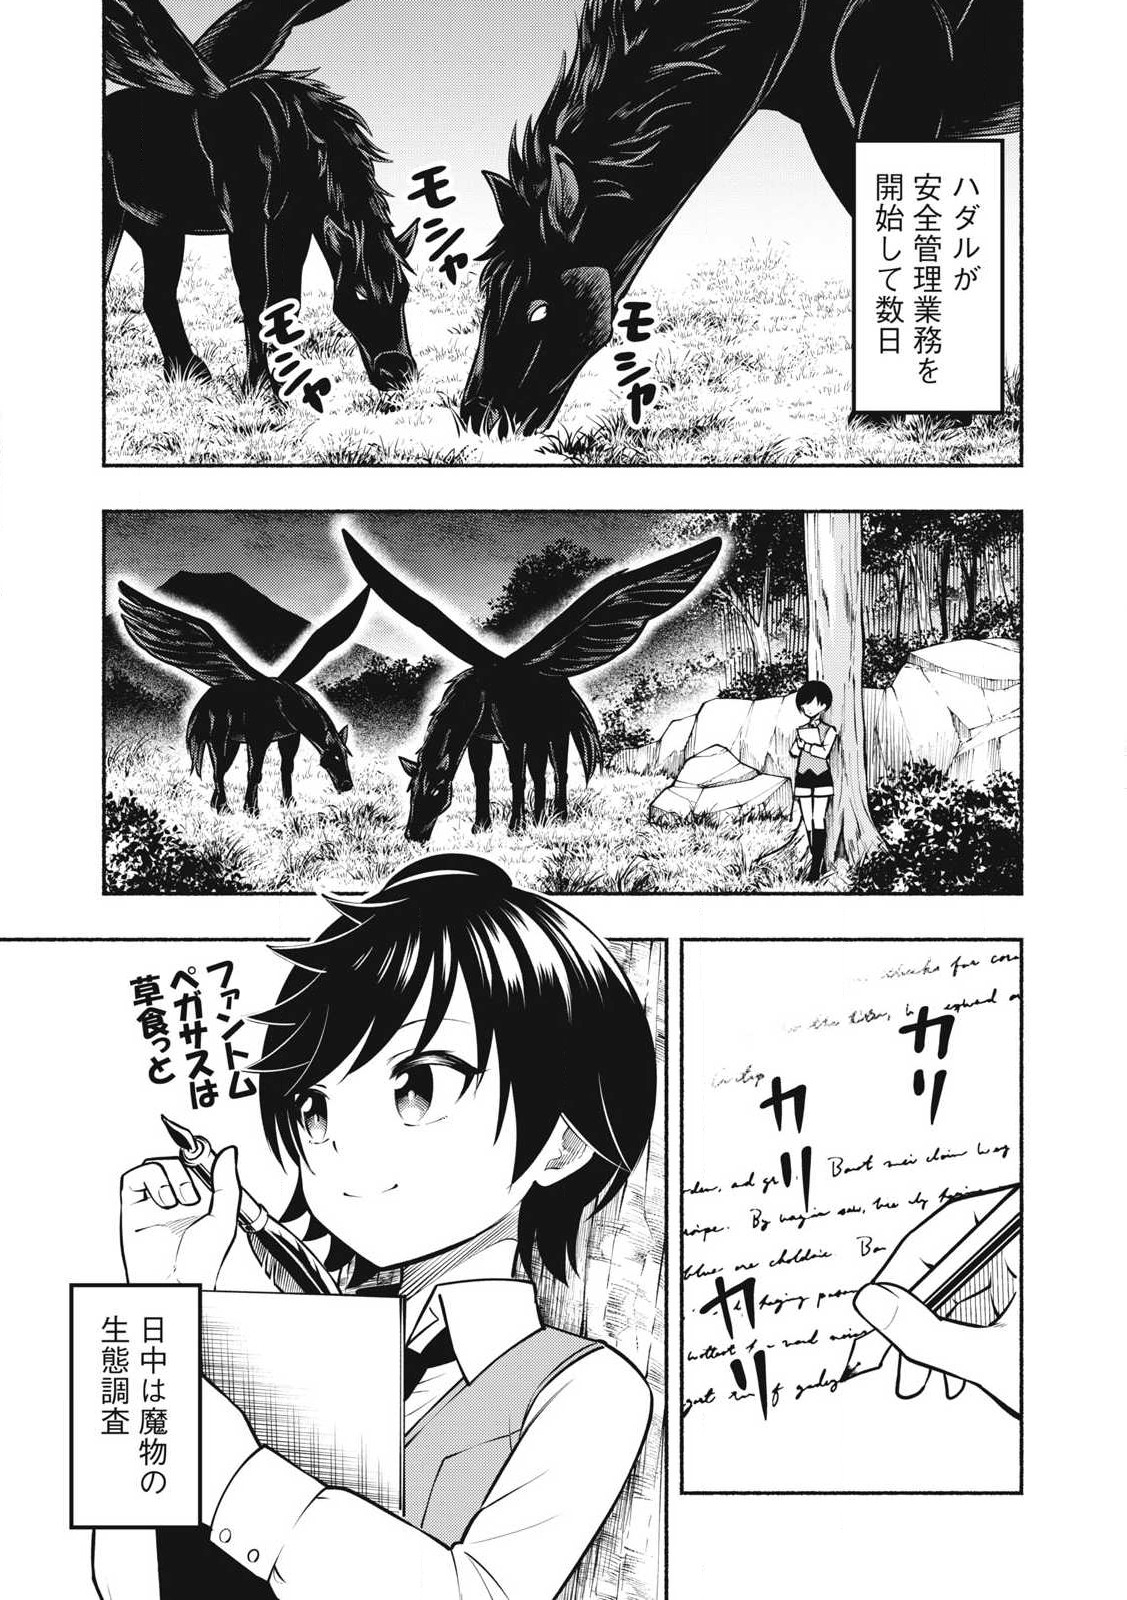 Yama ni Suterareta Ore, Tokage no Youshi ni Naru - Chapter 13.1 - Page 1